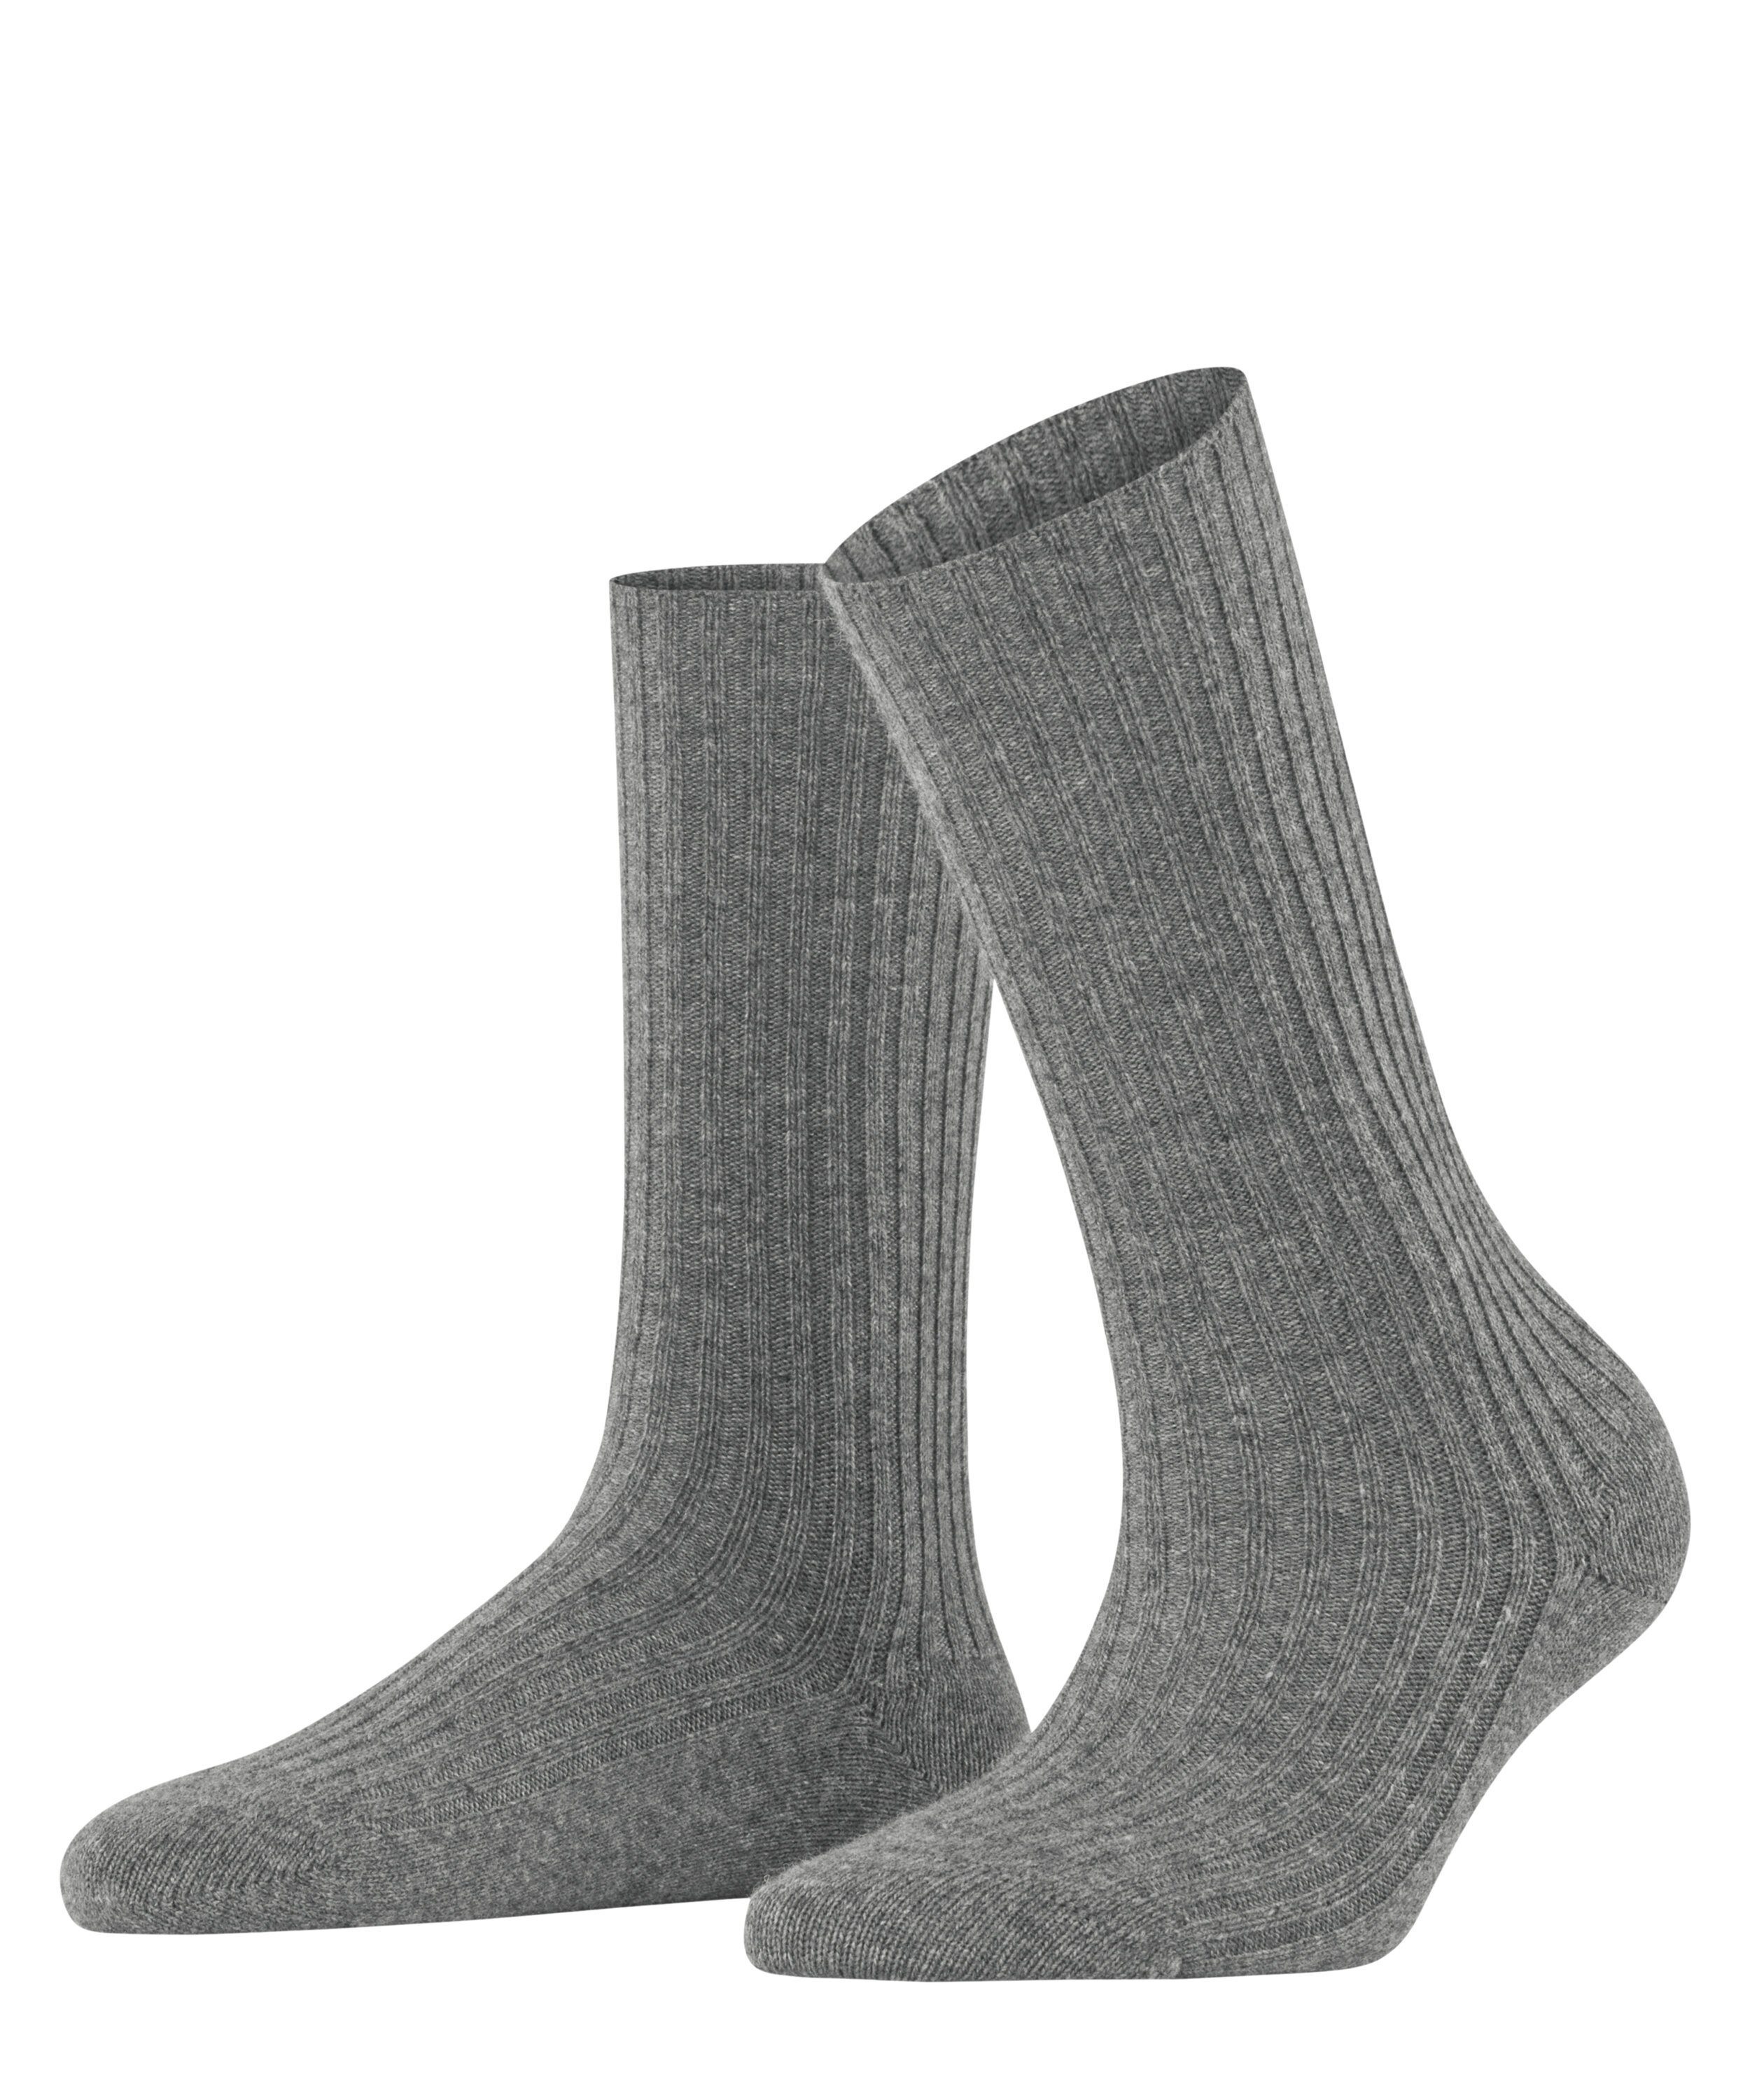 FALKE Socken Cosy Cashmere Giftset (1-Paar) light greymel. (3390)